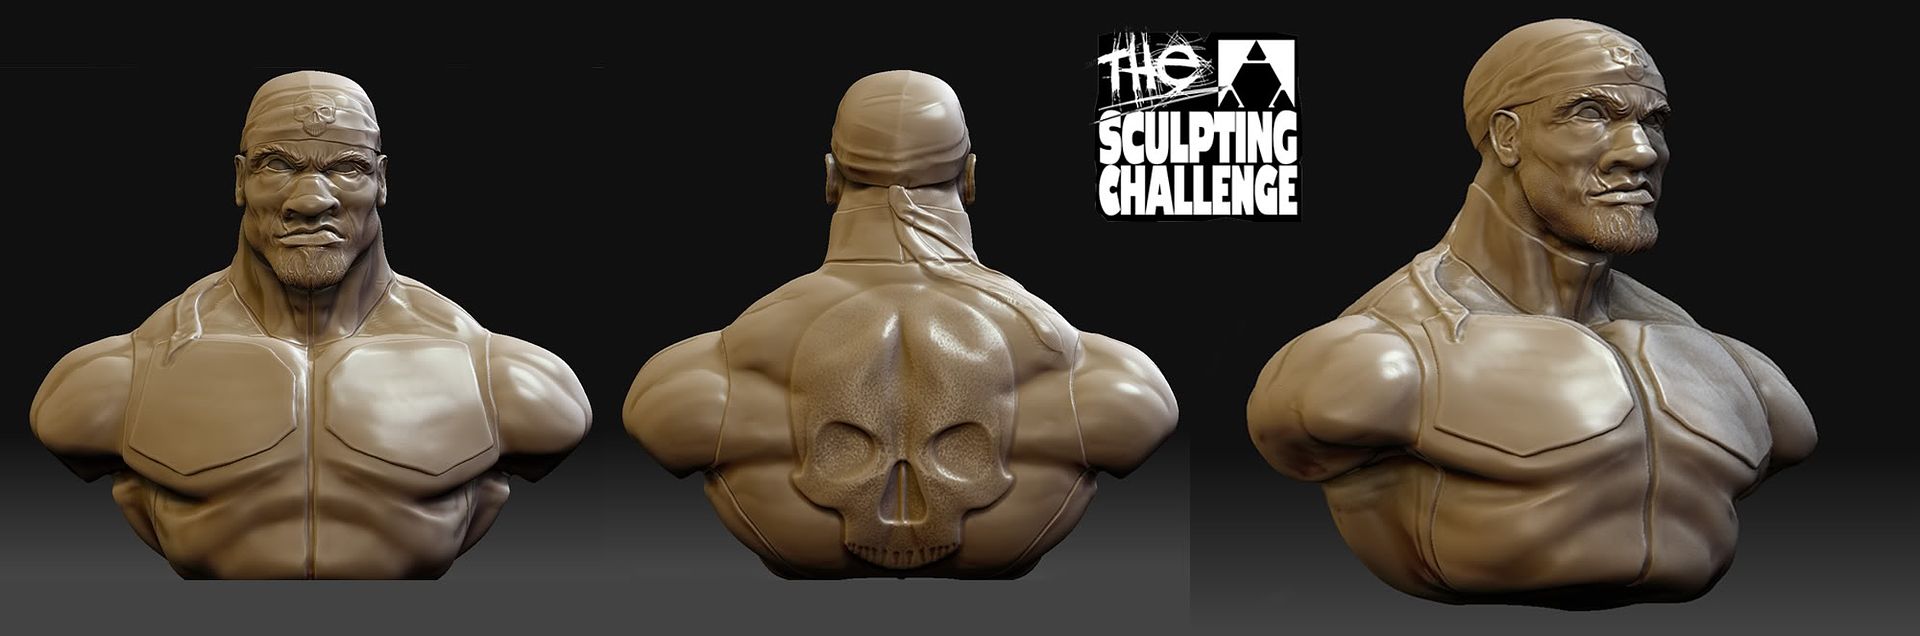 Sculpting-Challenge-Final-Sumbissio.jpg